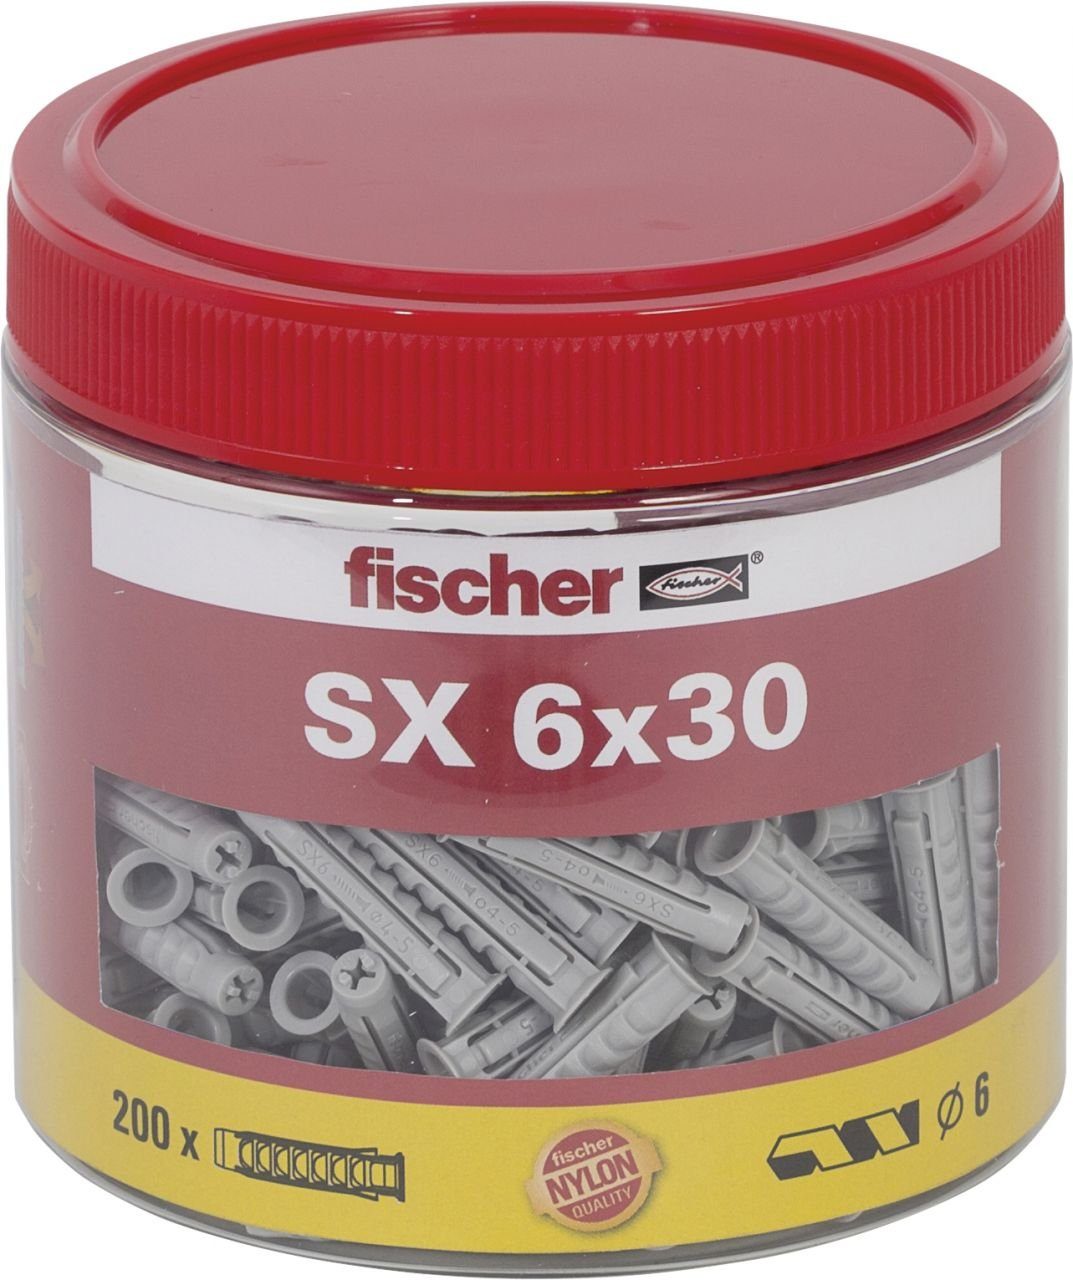 Fischer Befestigungstechnik fischer Schrauben- und Dübel-Set Fischer Spreizdübel SX 6.0 x 30 mm - 200 Stück